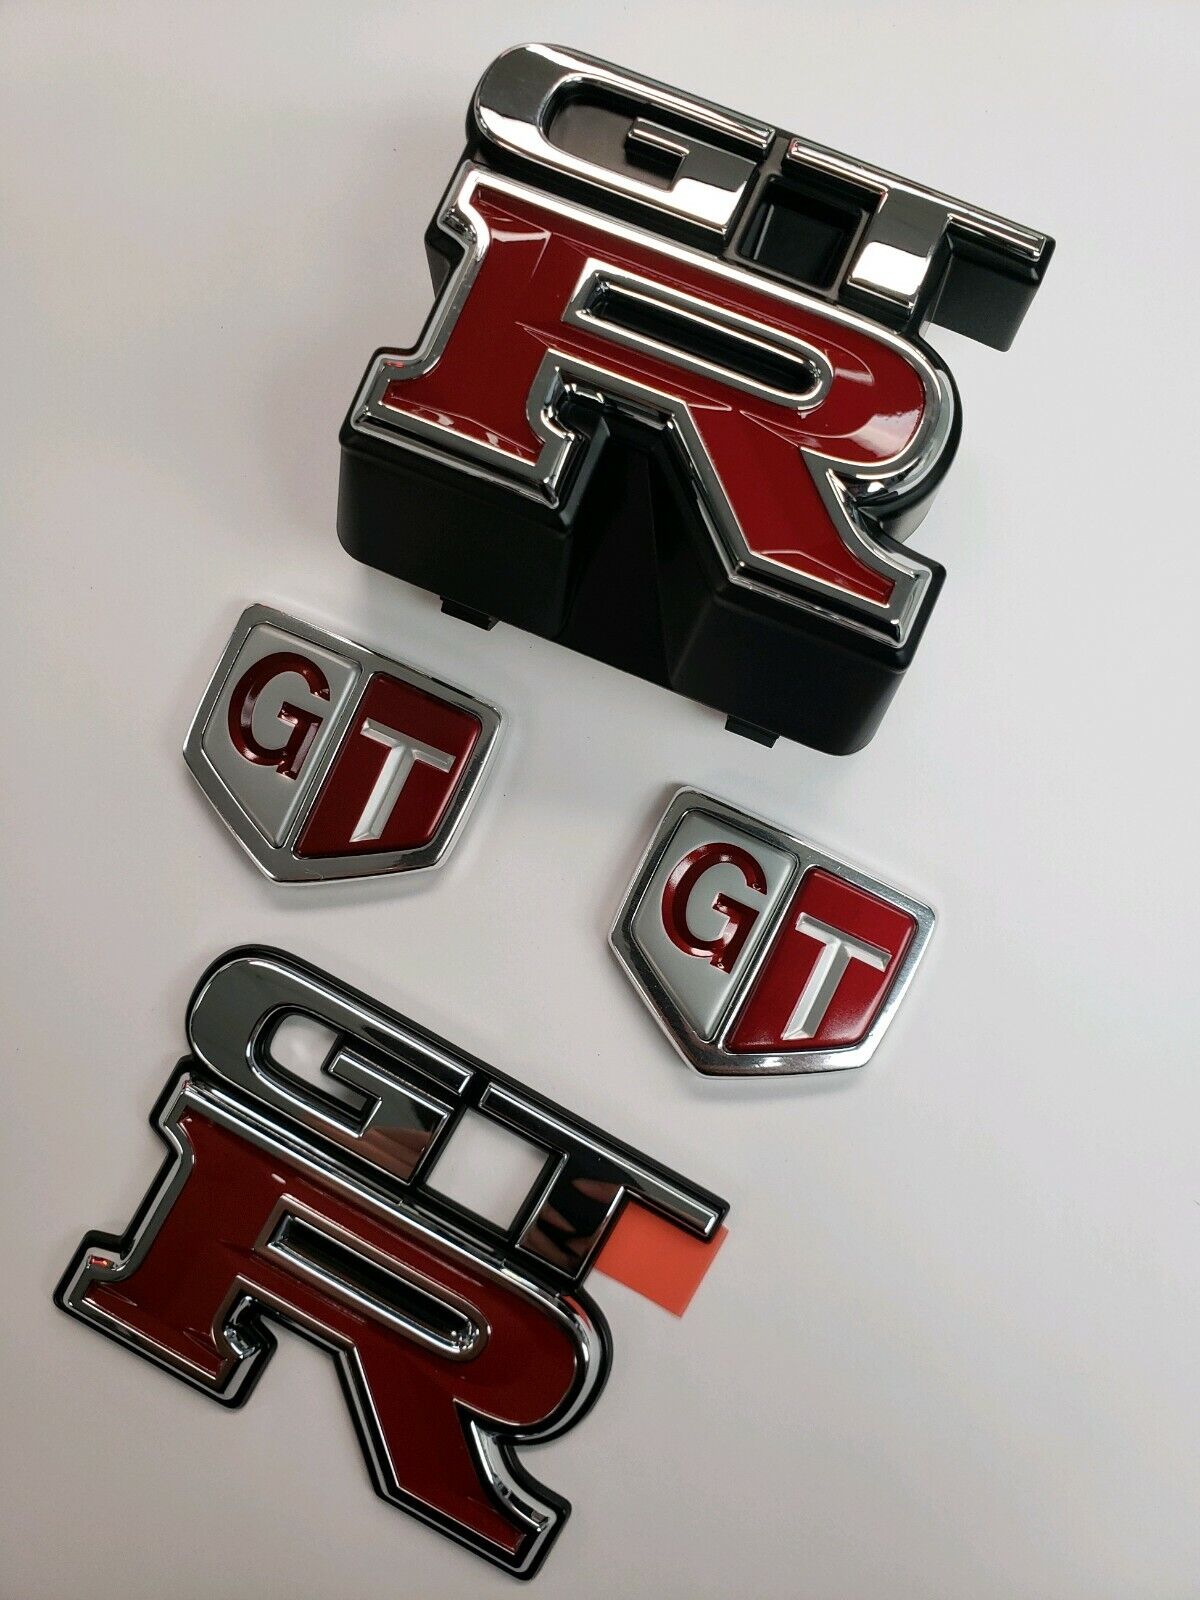 JDM Nissan R33 Skyline GTR Complete Emblem Kit